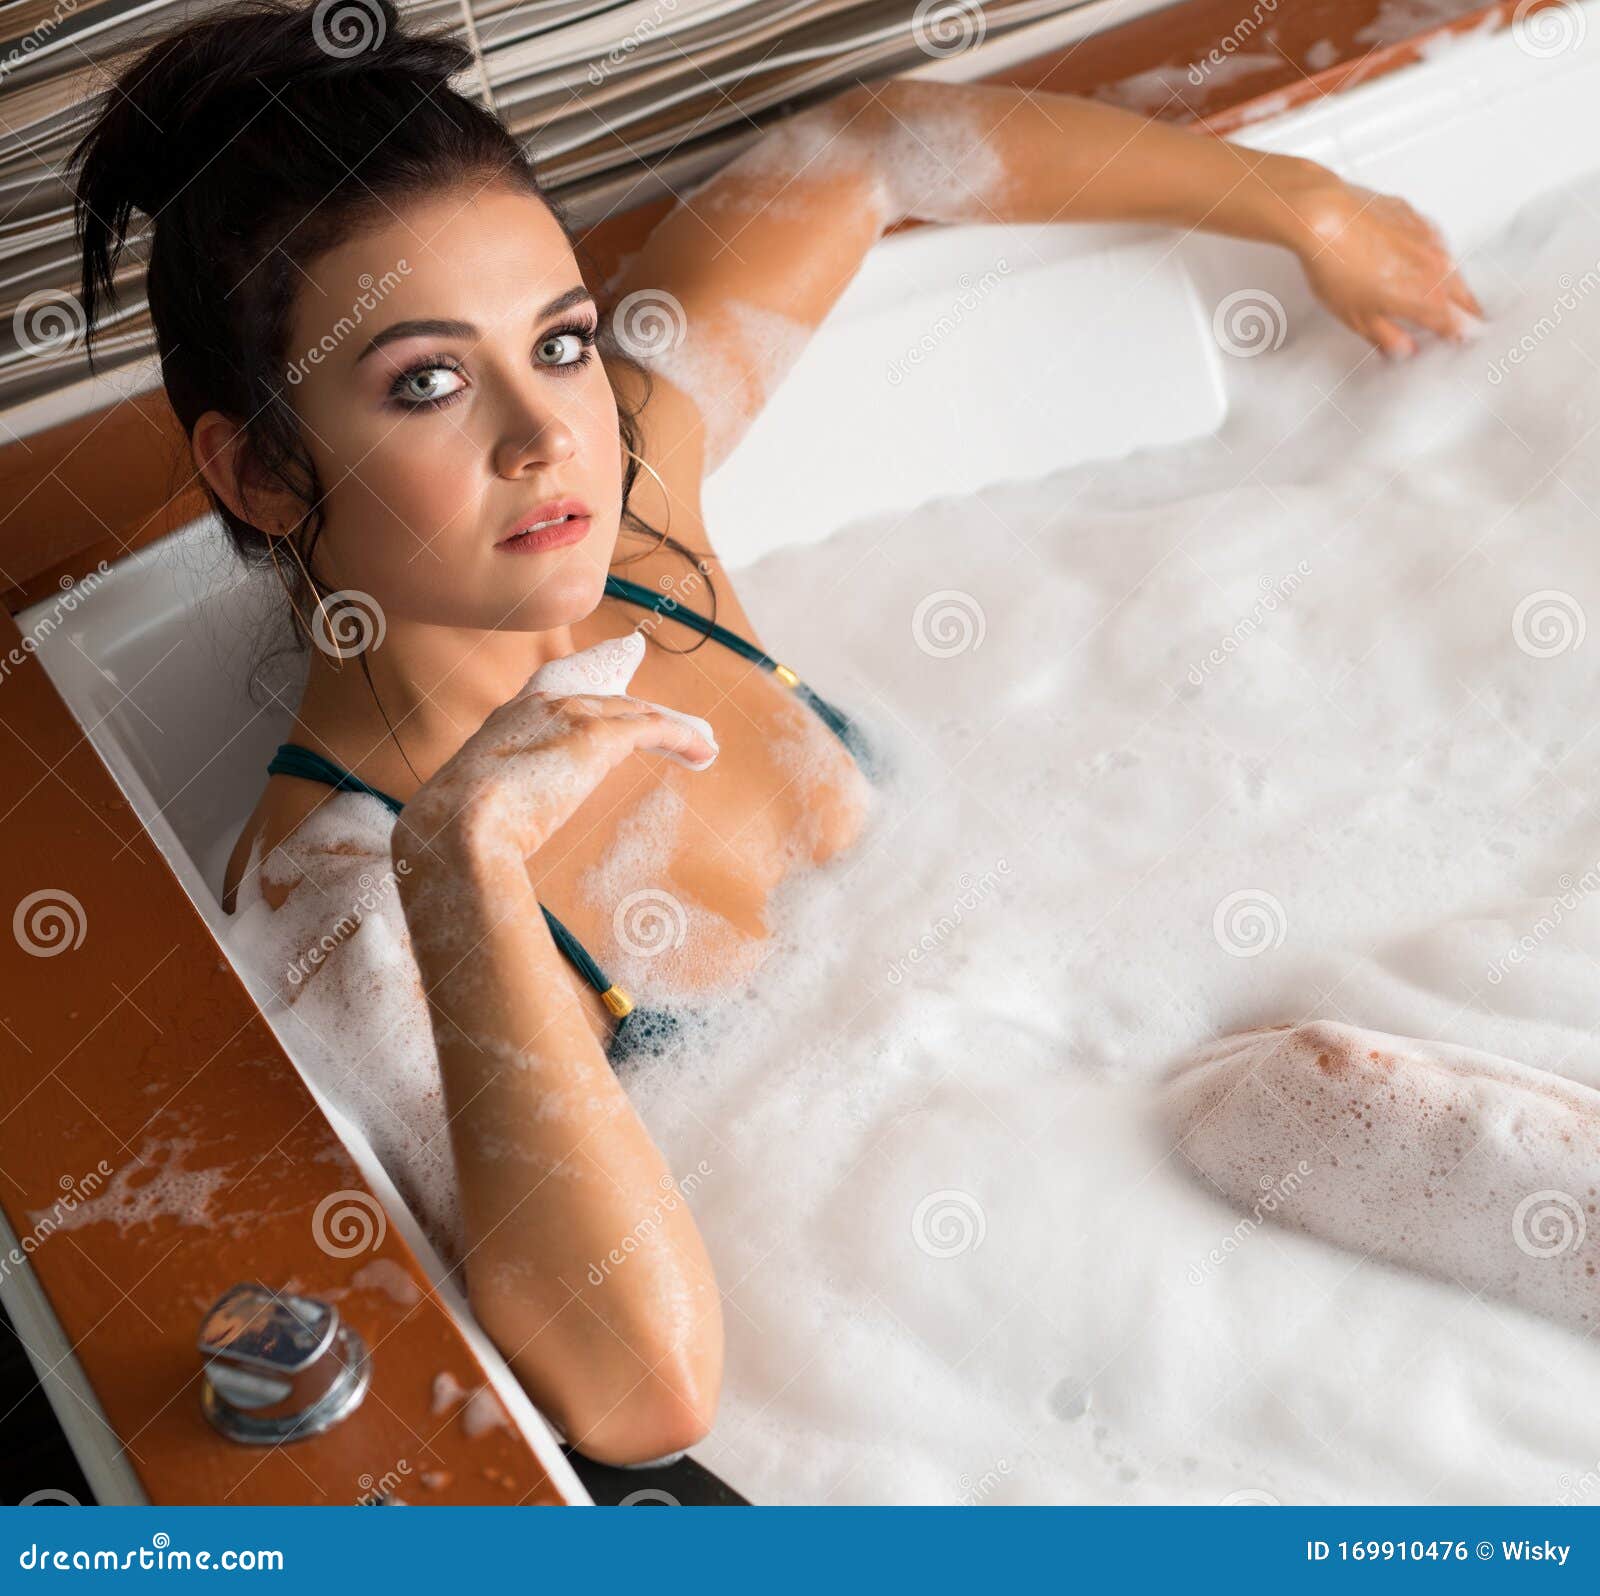 Con apoyo En respuesta a la 184 Sexy Woman Jacuzzi Stock Photos - Free & Royalty-Free Stock Photos from  Dreamstime